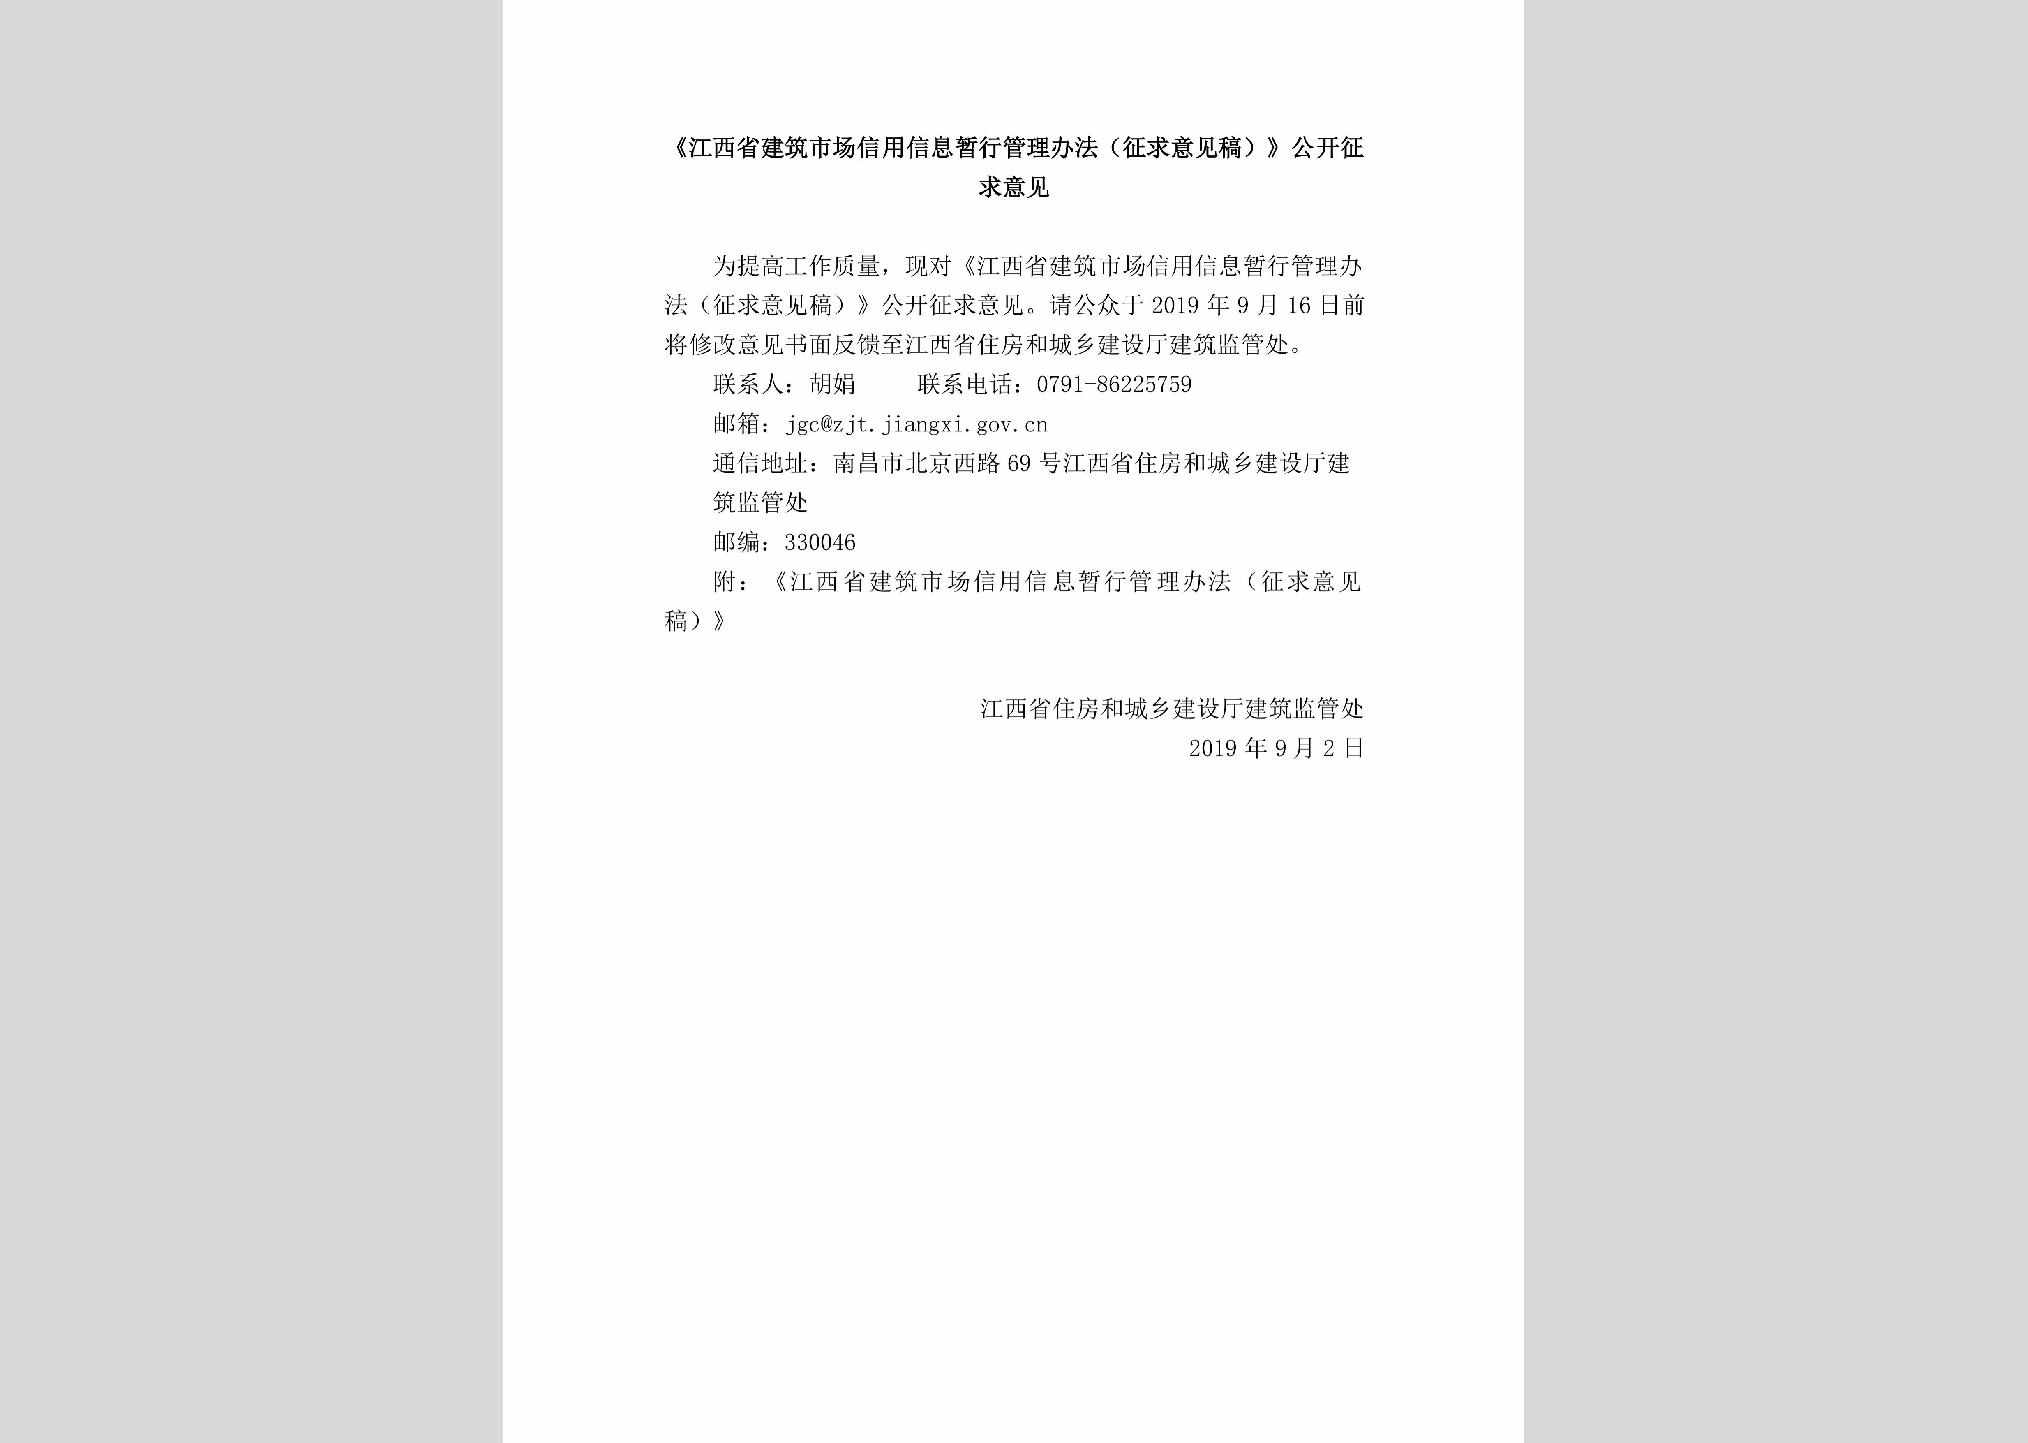 JX-JZSCXYXX-2019：《江西省建筑市场信用信息暂行管理办法（征求意见稿）》公开征求意见